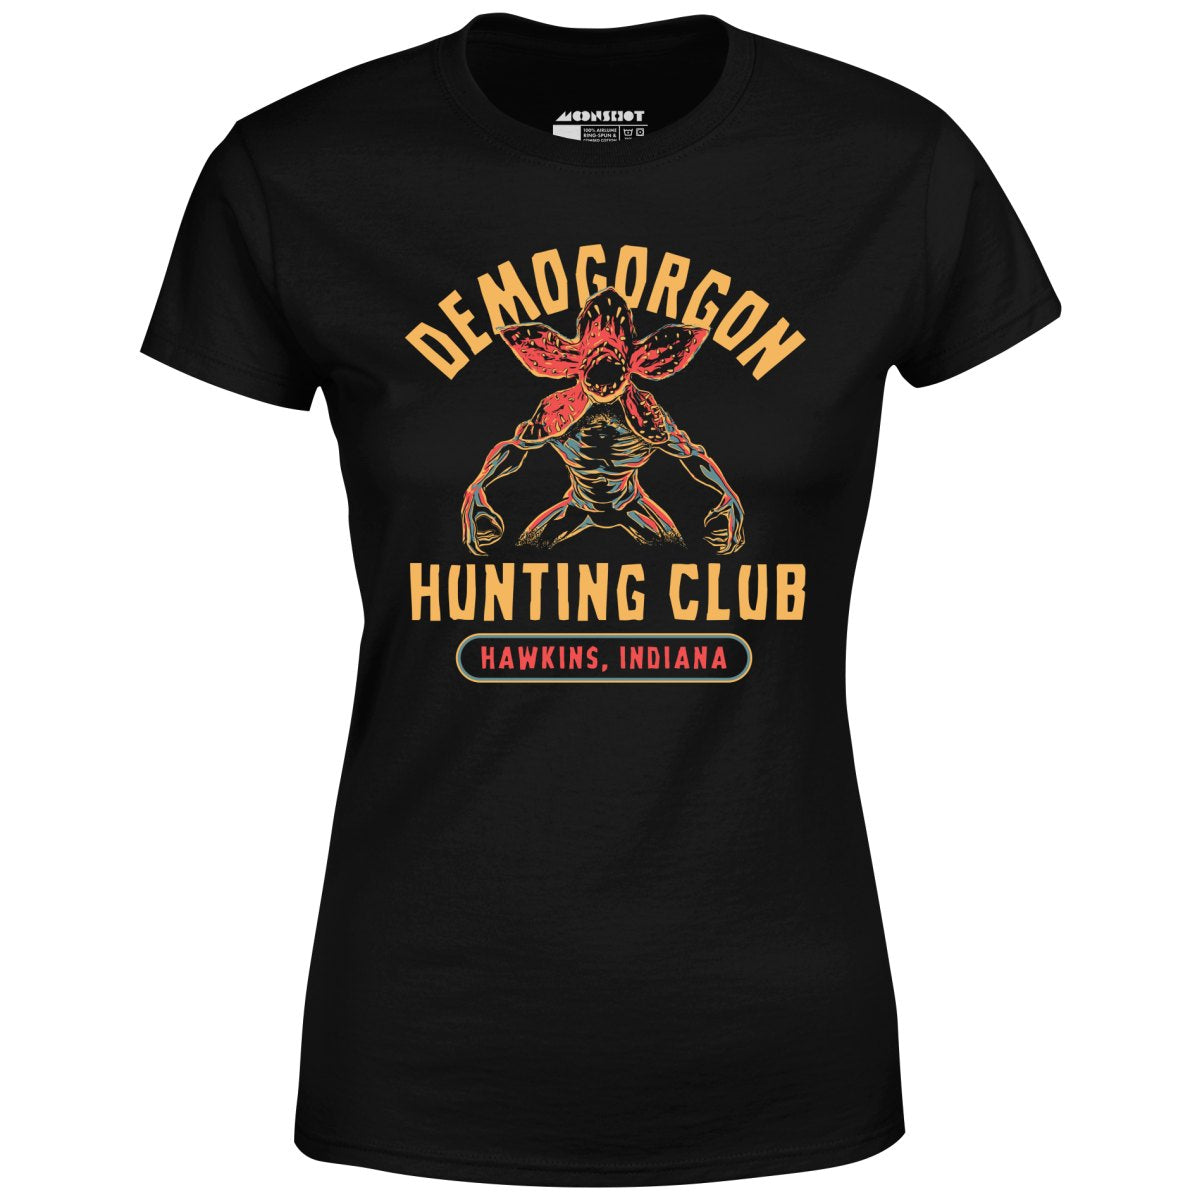 Demogorgon Hunting Club - Women's T-Shirt